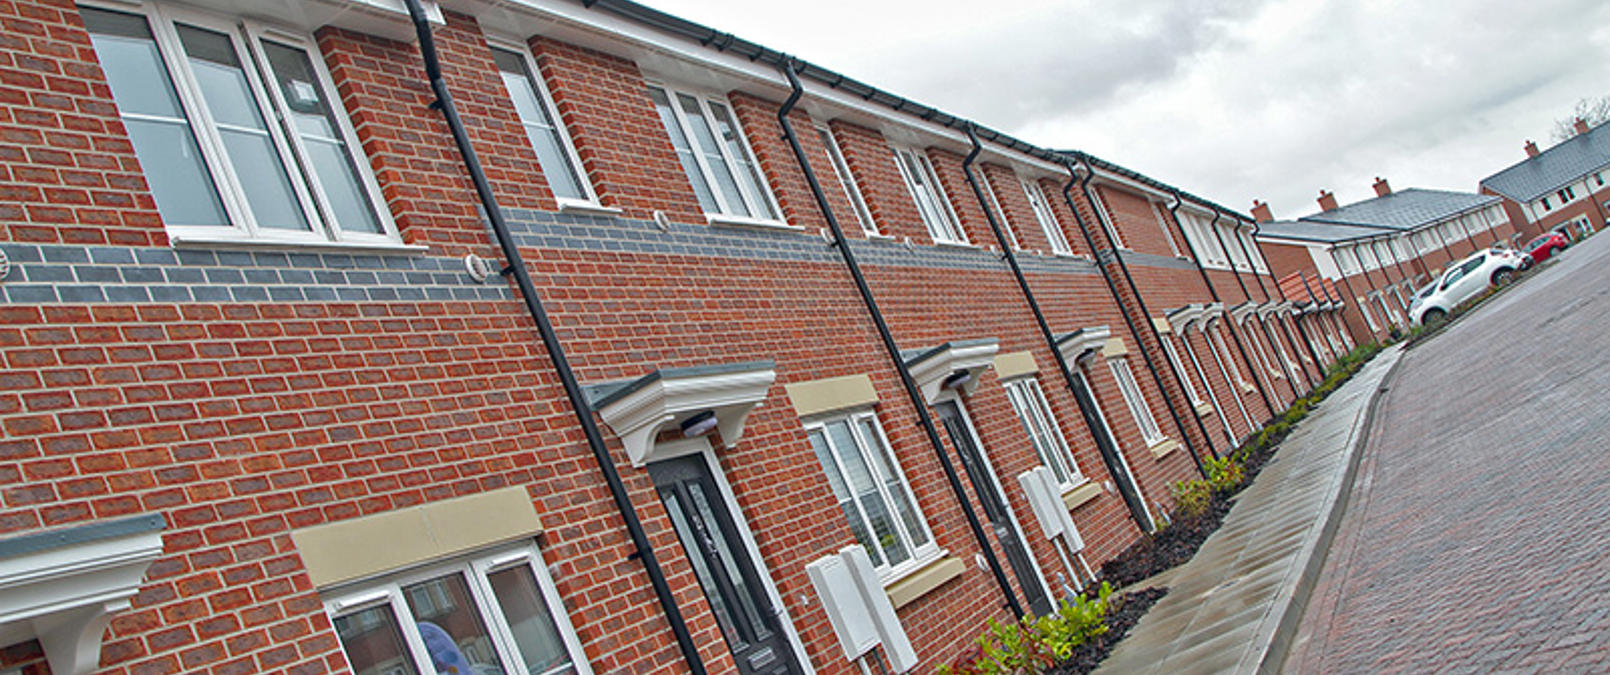 Terrace Housing Southfield Road